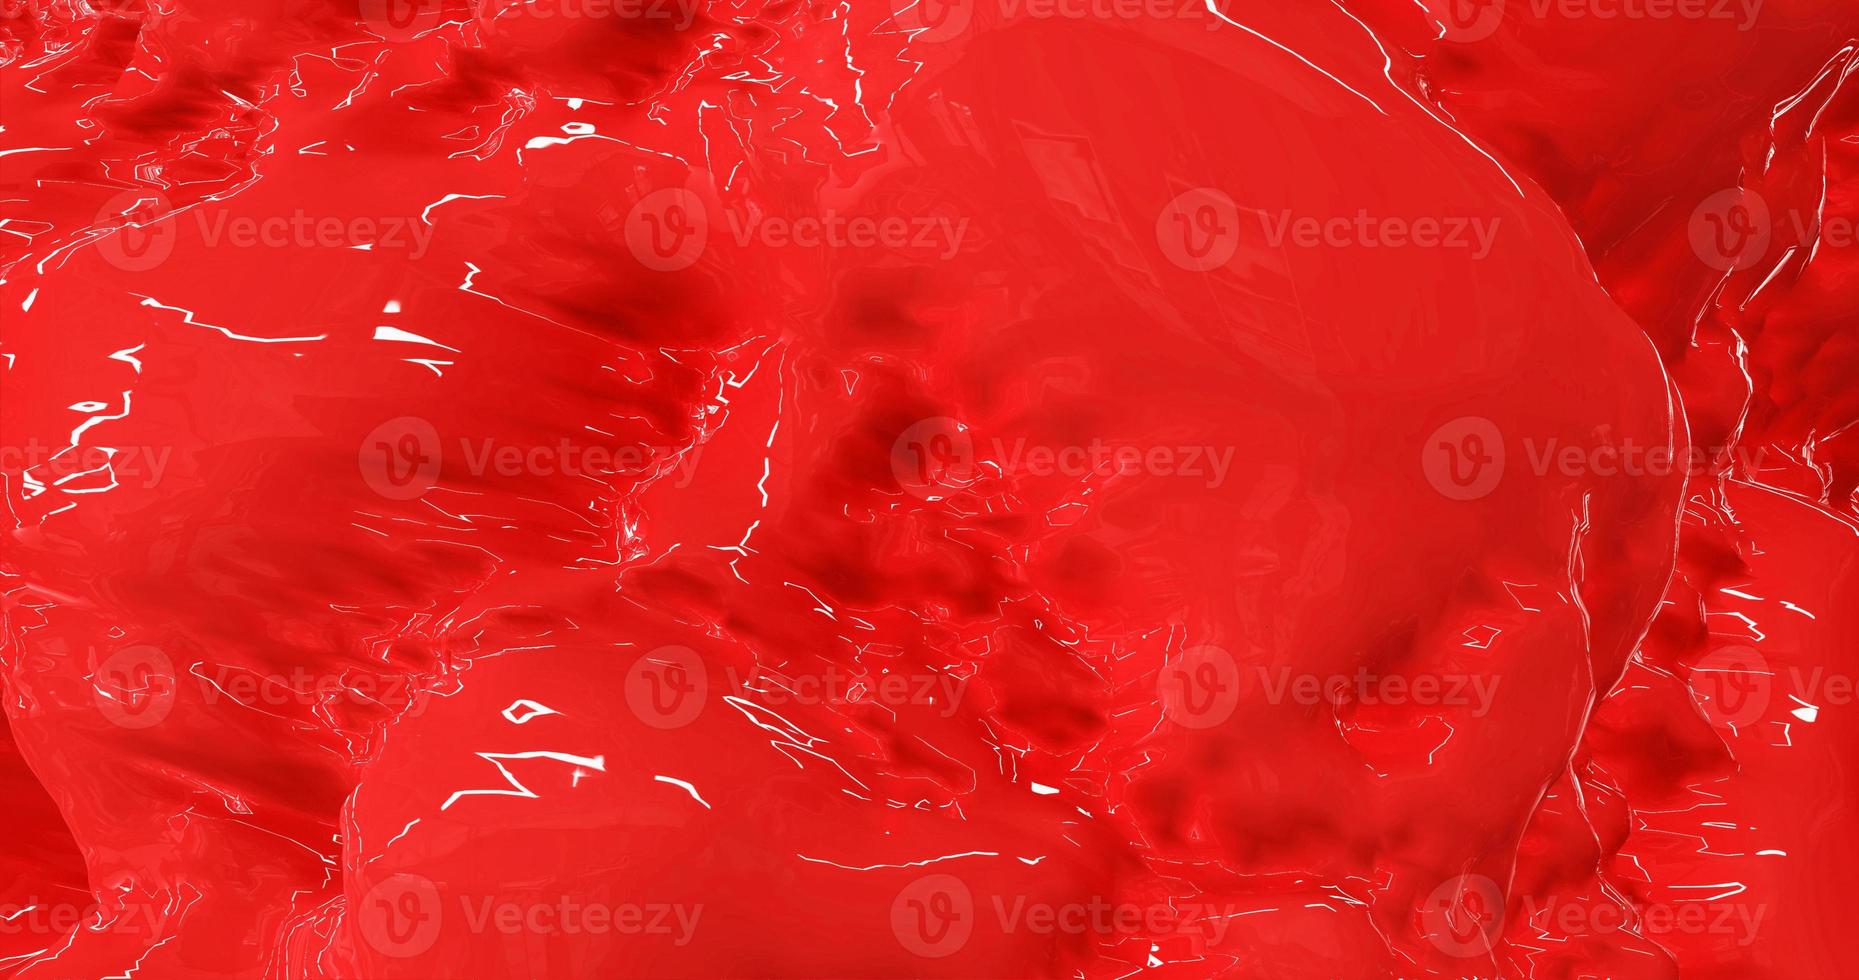 rood helder mooi vloeiende water, rood gekleurd vloeistof Leuk vinden ketchup, tomaat sap of bloed. abstract achtergrond foto